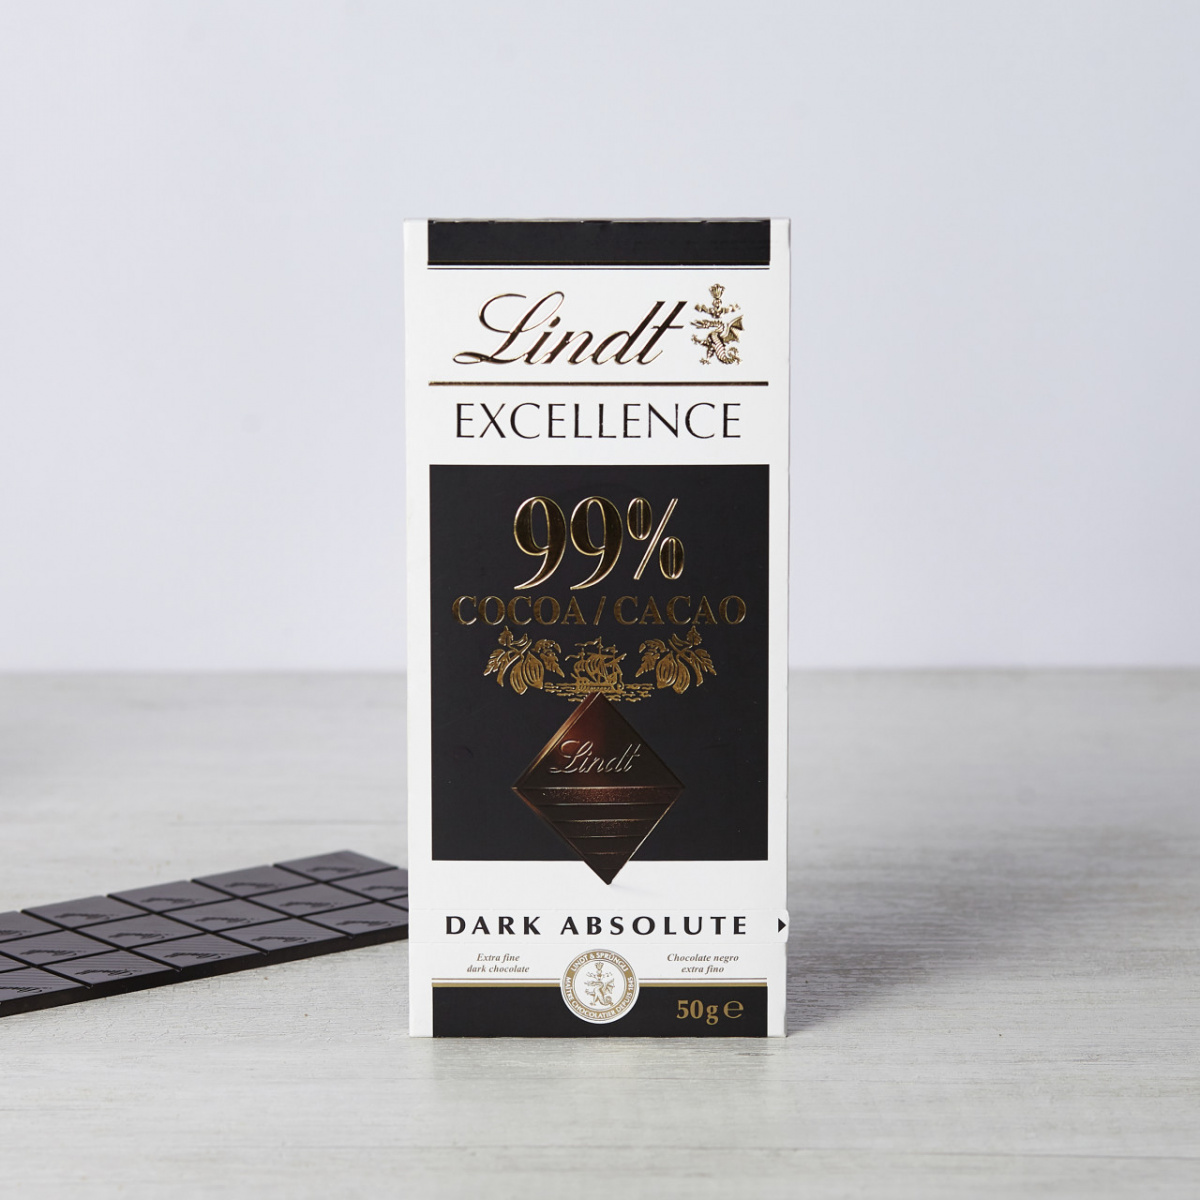 Екстра фино природно чоколадо со 99% какао